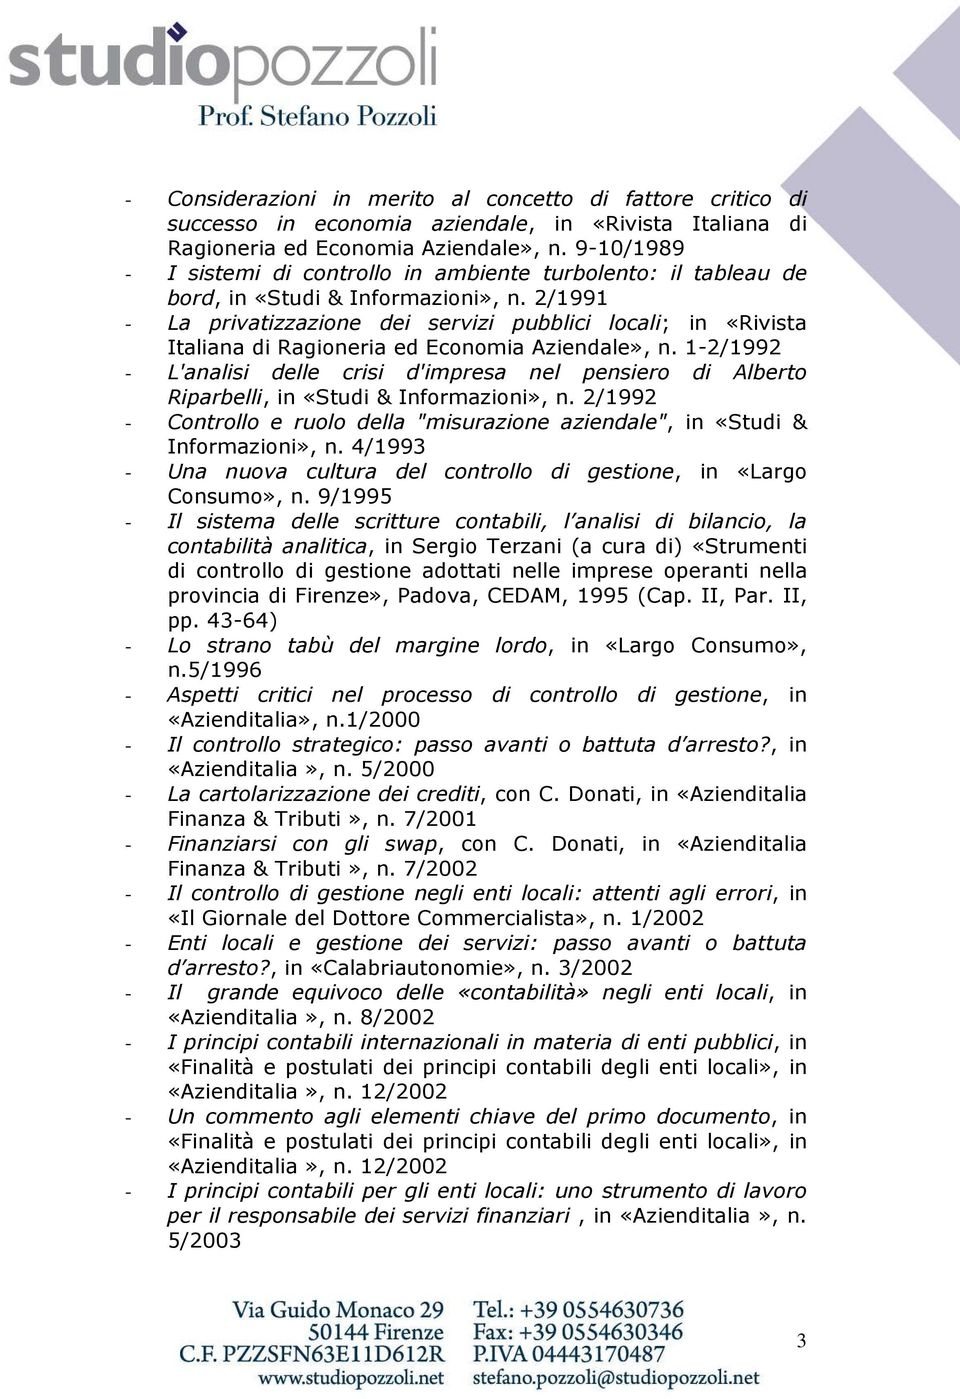 2/1991 - La privatizzazione dei servizi pubblici locali; in «Rivista Italiana di Ragioneria ed Economia Aziendale», n.